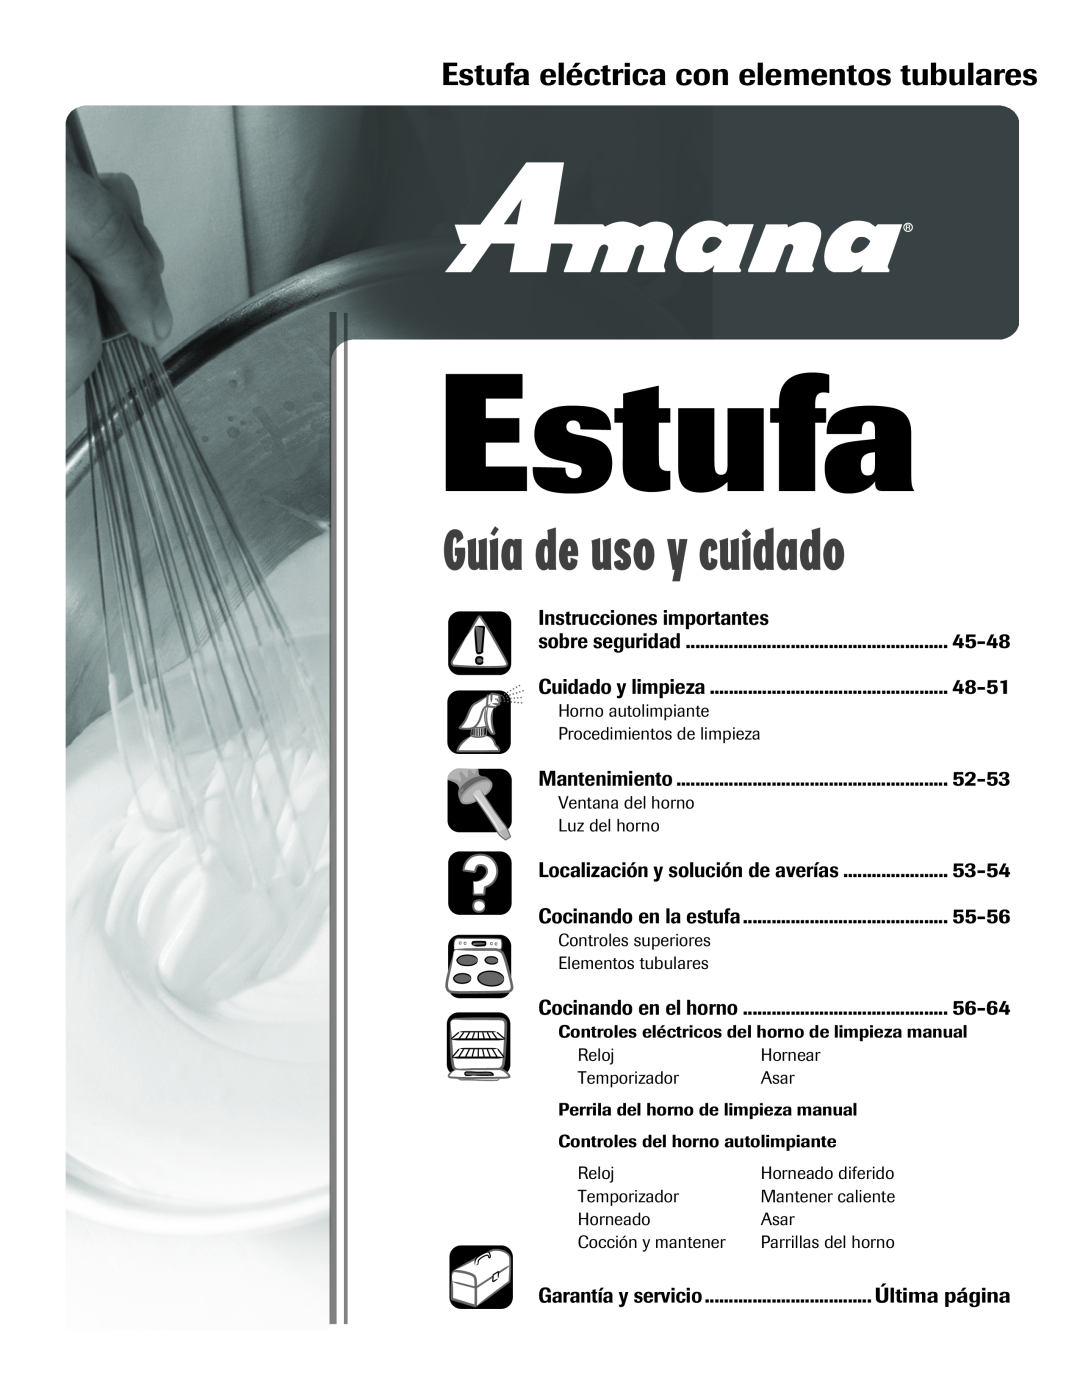 Amana Electric Range - Coil Estufa eléctrica con elementos tubulares, Instrucciones importantes, 45-48, 48-51, 52-53 